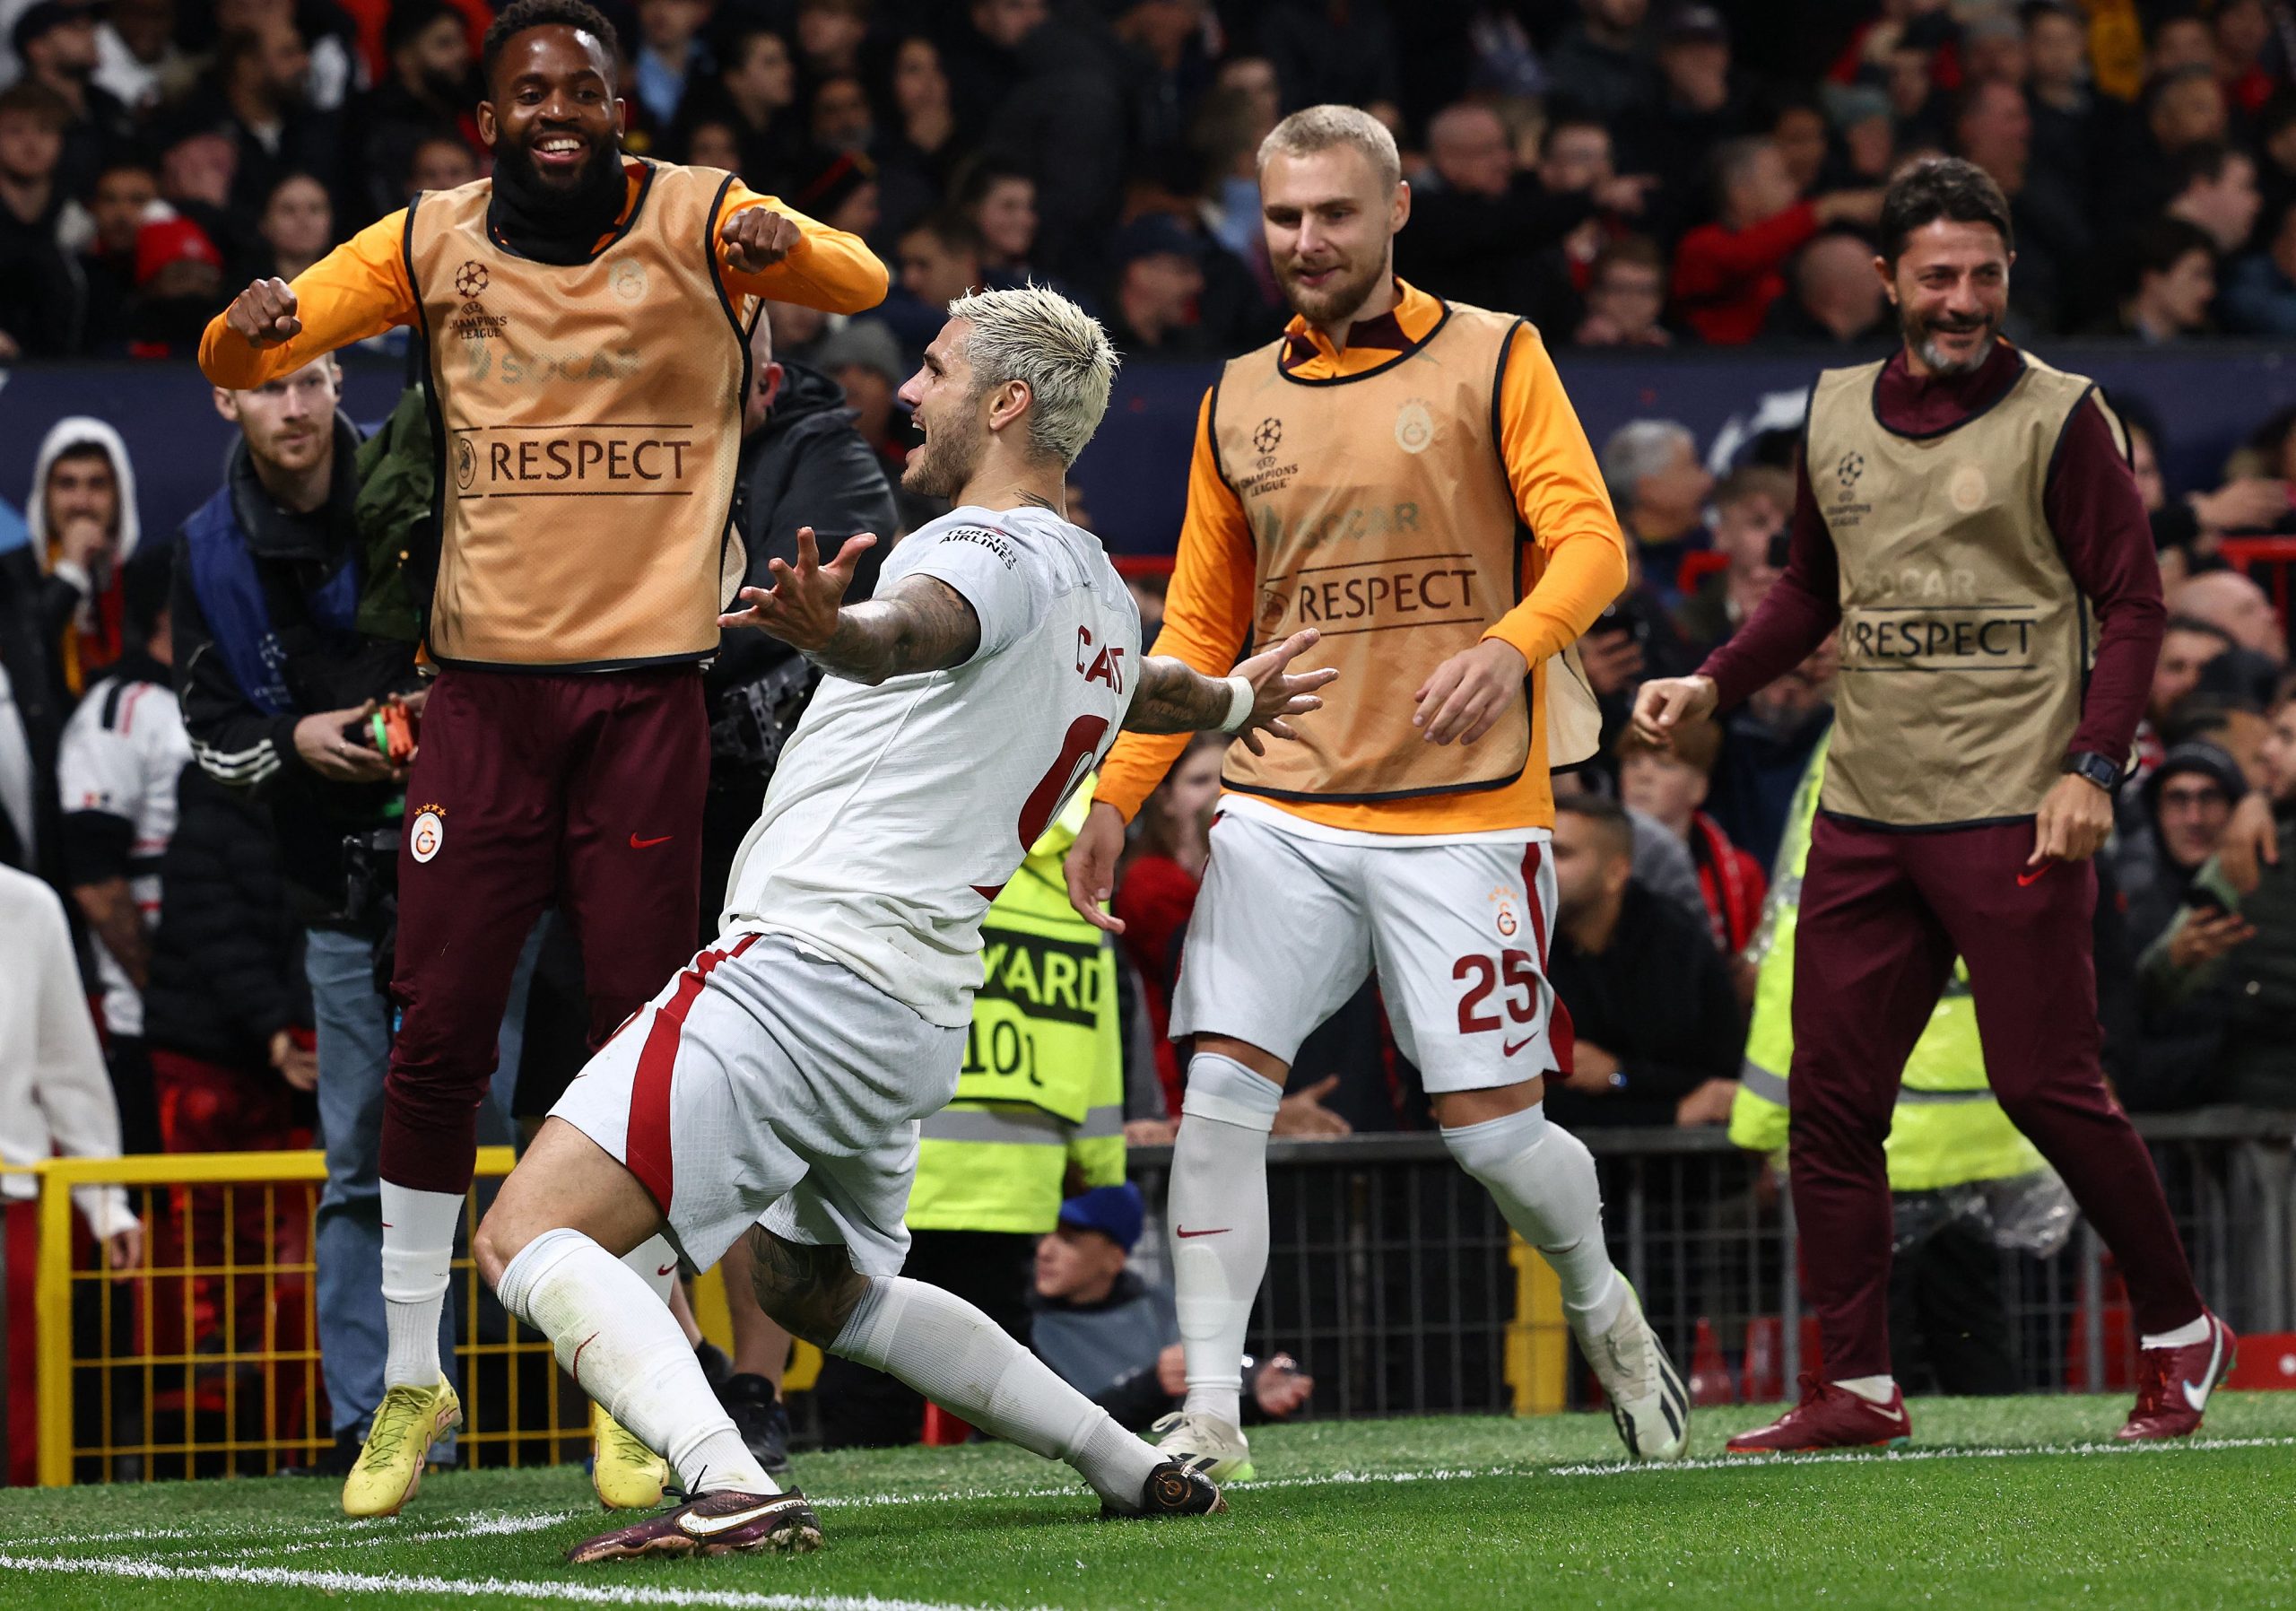 Mauro Icardi garantiu a vitória do Galatasaray sobre o Manchester United (Darren Staples/AFP via Getty Images)